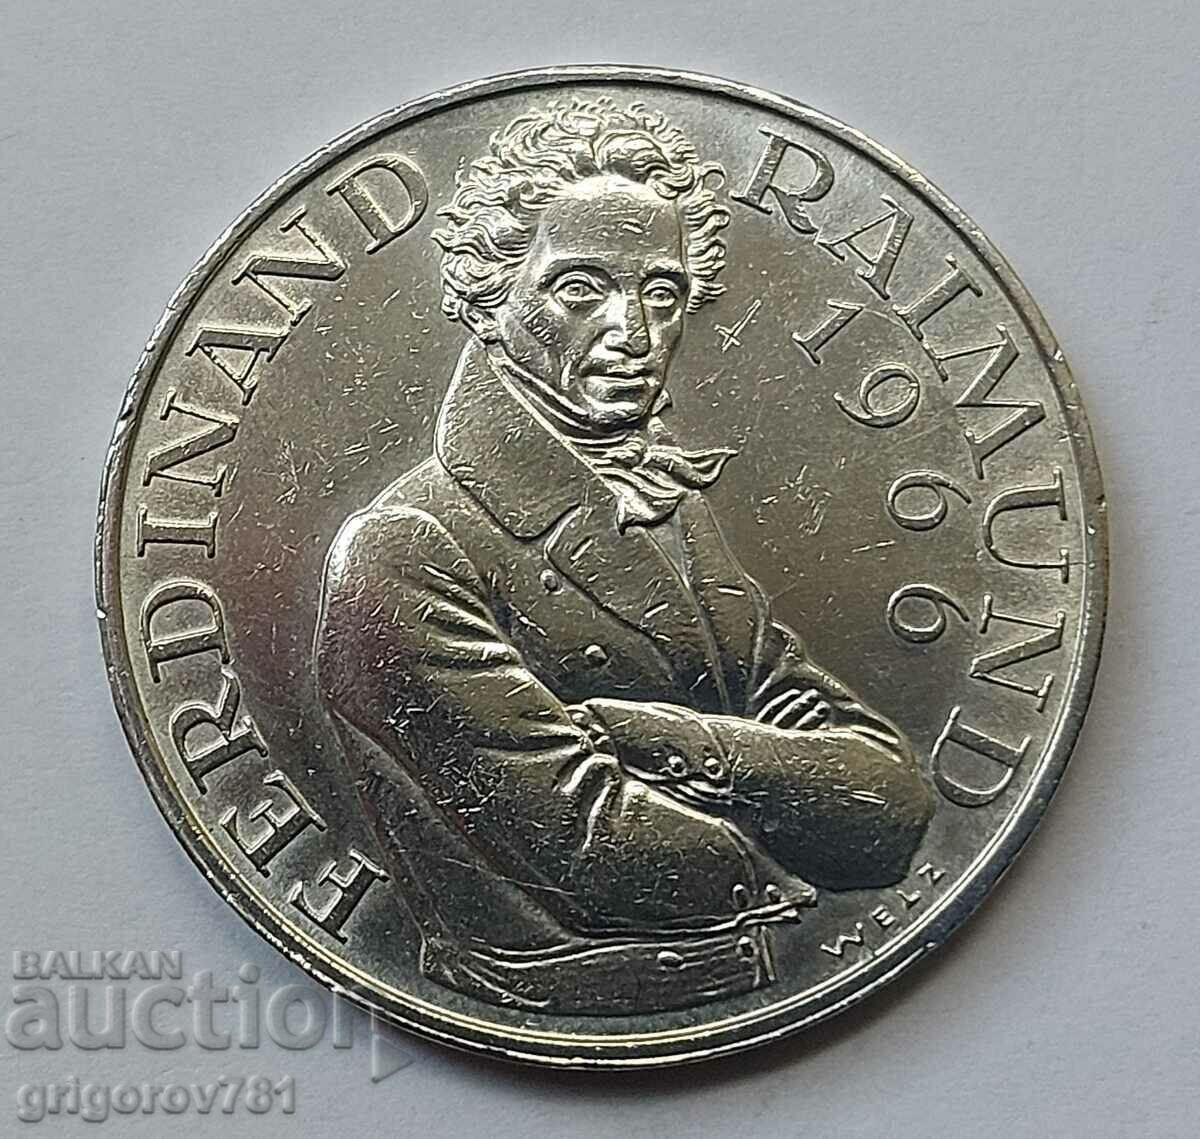 Ασημένιο 25 σελίνια Αυστρία 1966 - Ασημένιο νόμισμα #20